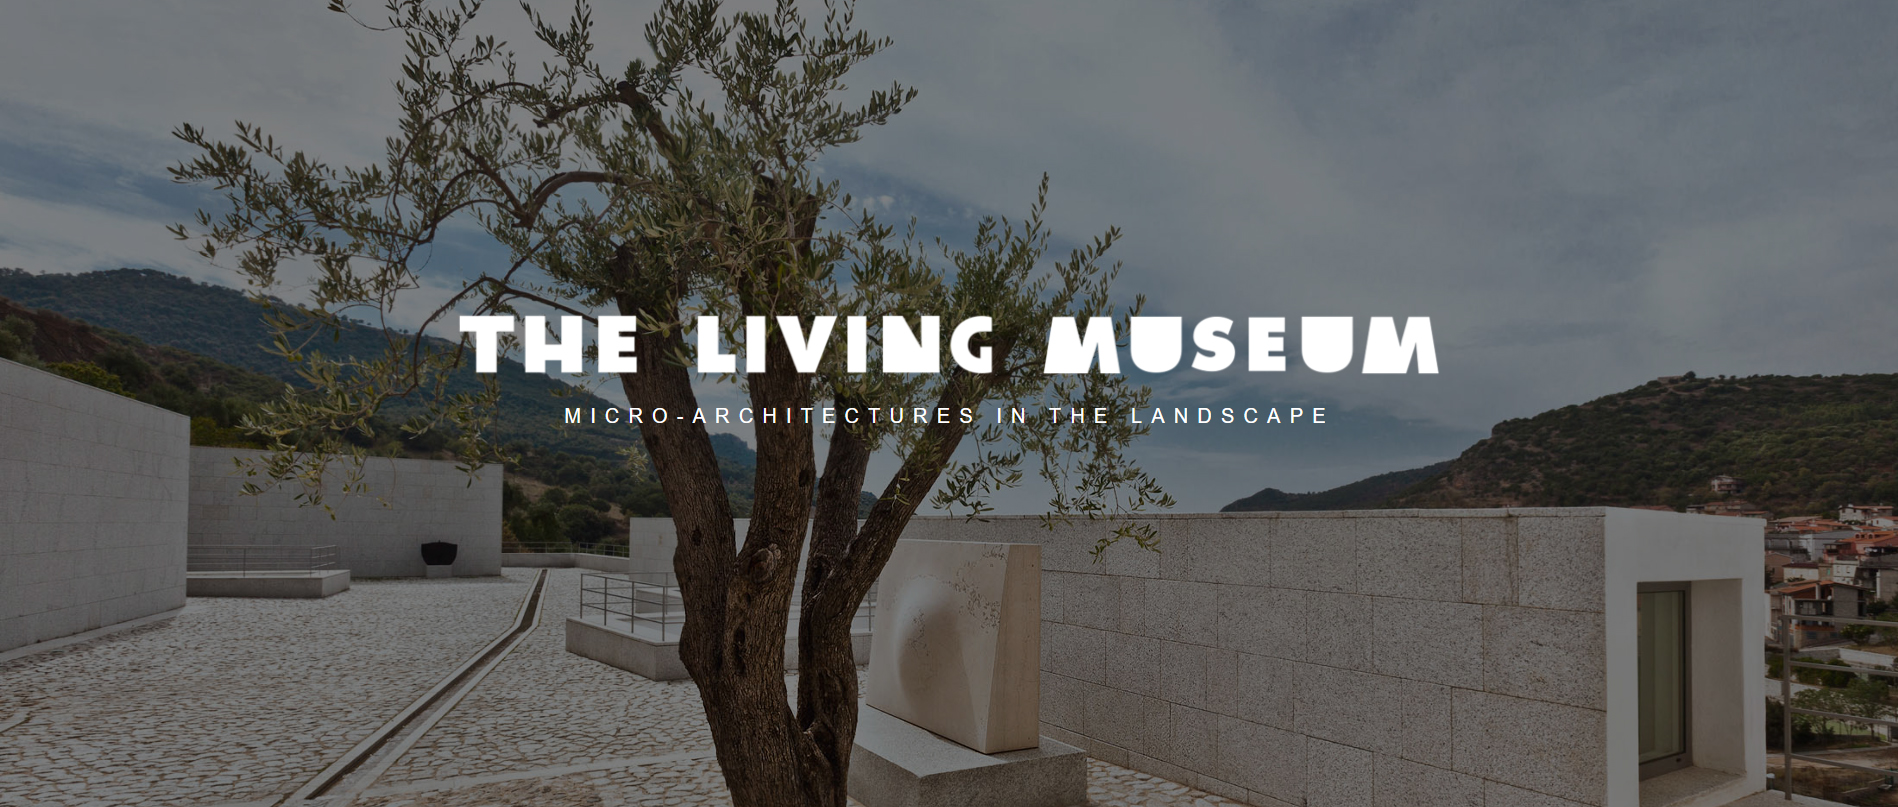 生活博物馆：景观中的微建筑设计竞赛